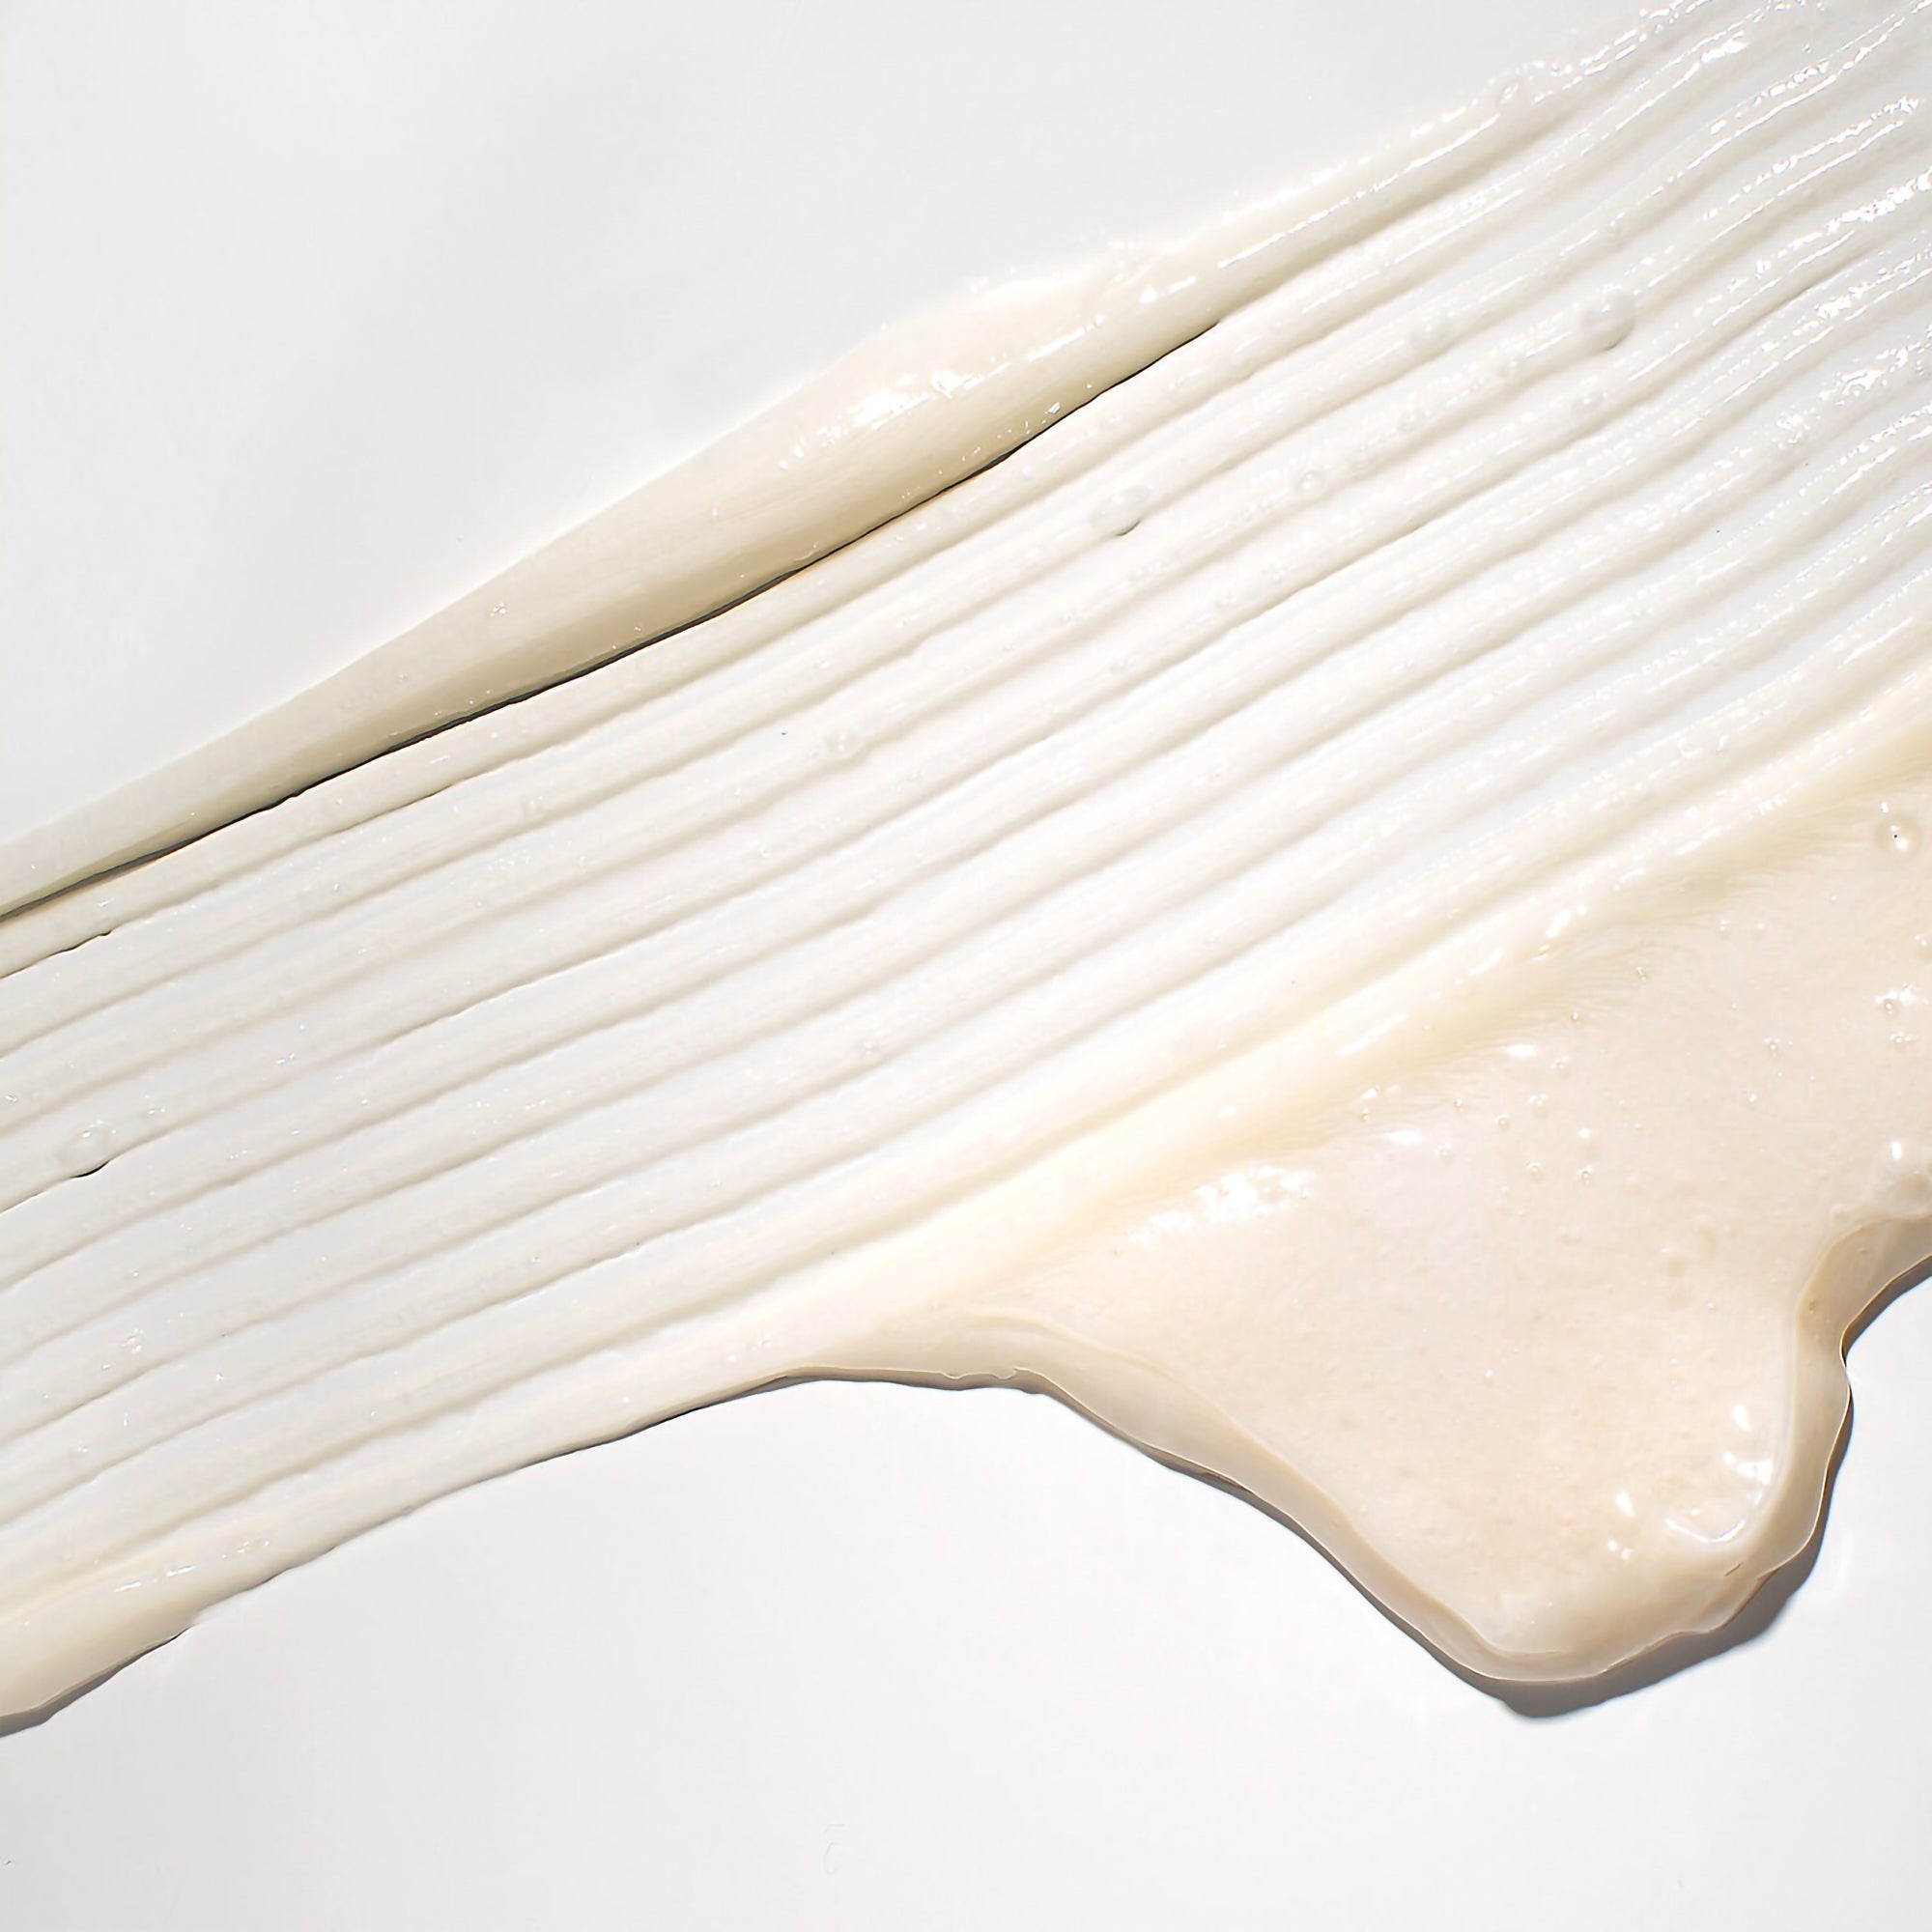 Mizani True Textures Cream Cleansing Conditioner / 16OZ